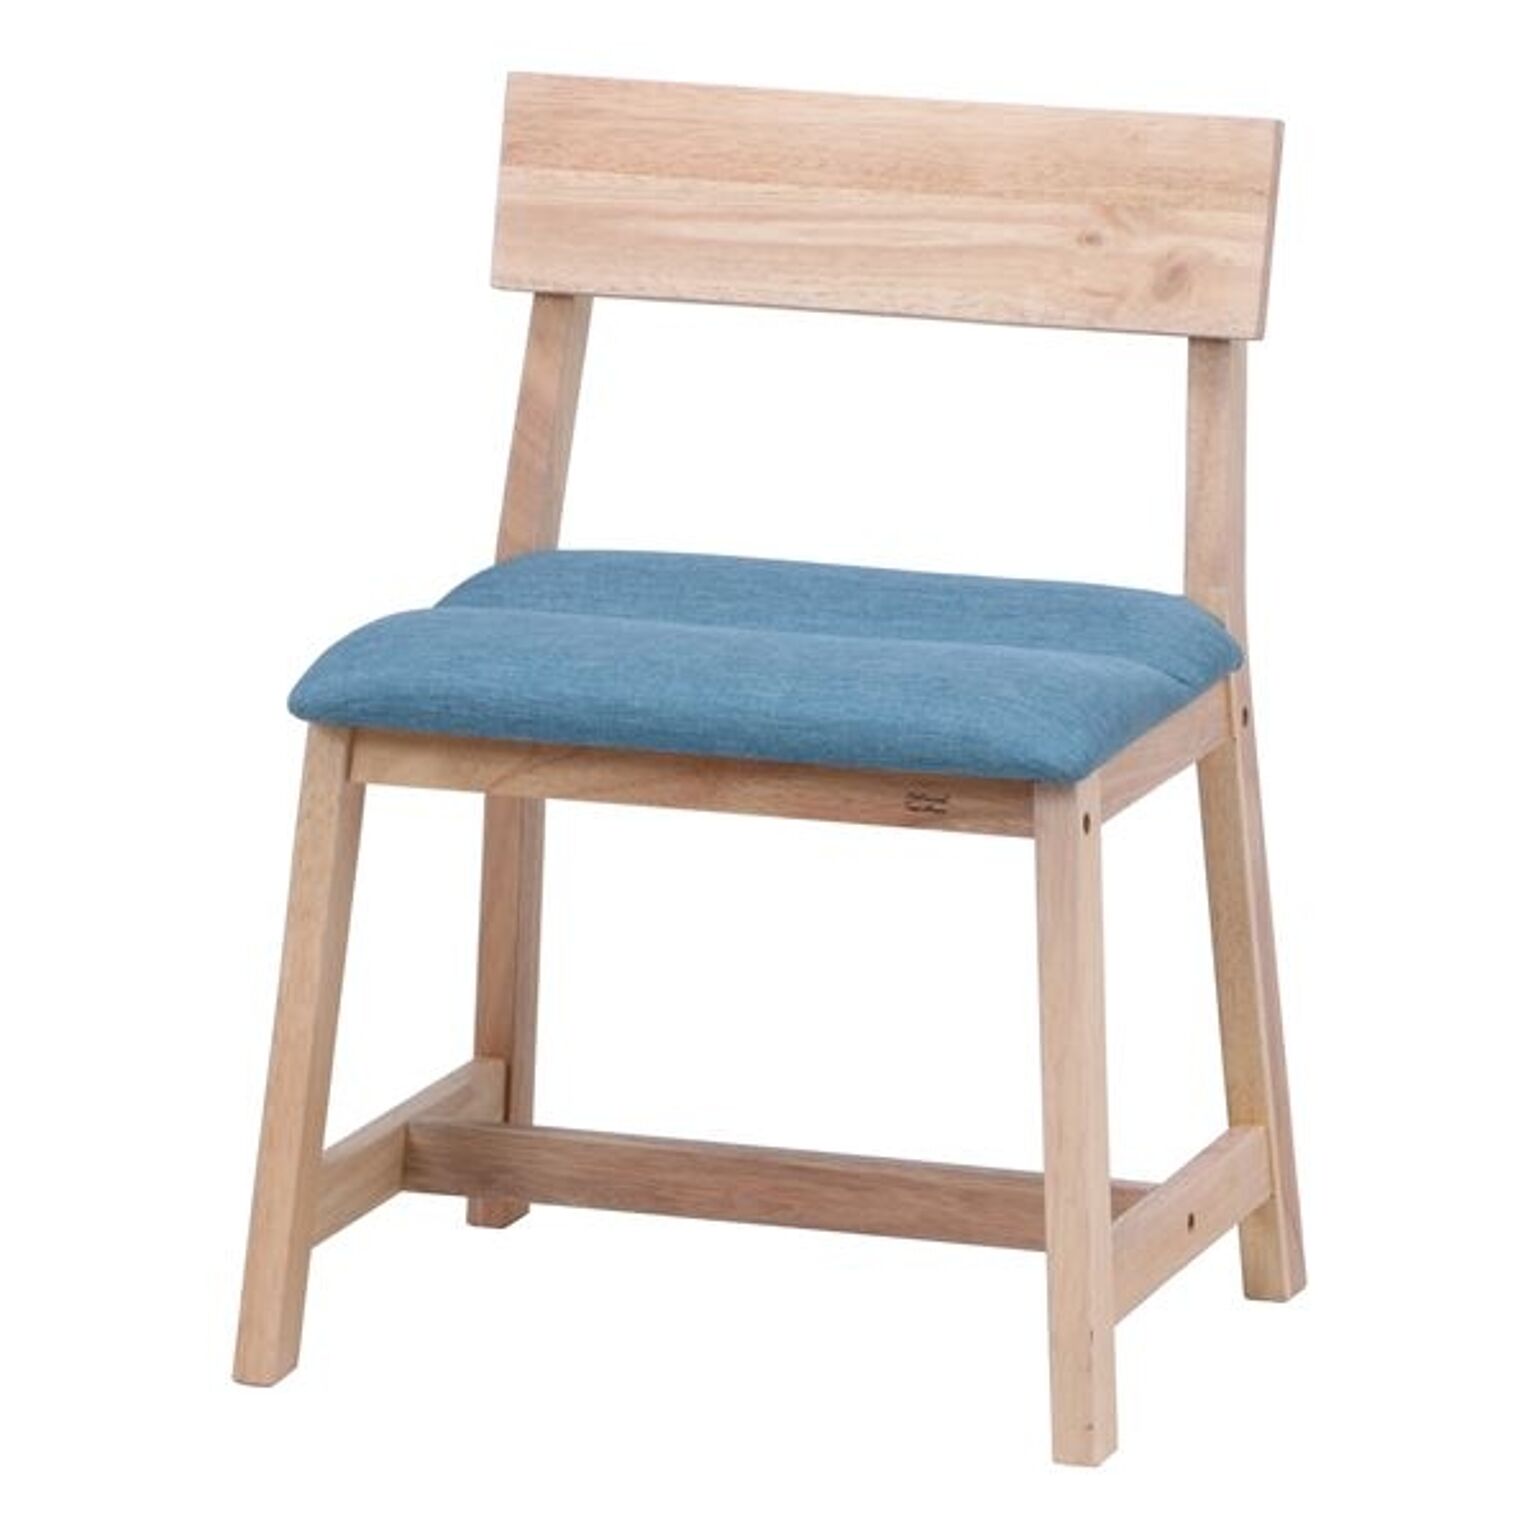 ダイニングチェア 食卓椅子 幅48×奥行43.5×高さ74.5cm 2個セット 木製 NS KD 組立品 リビング 在宅ワーク【代引不可】